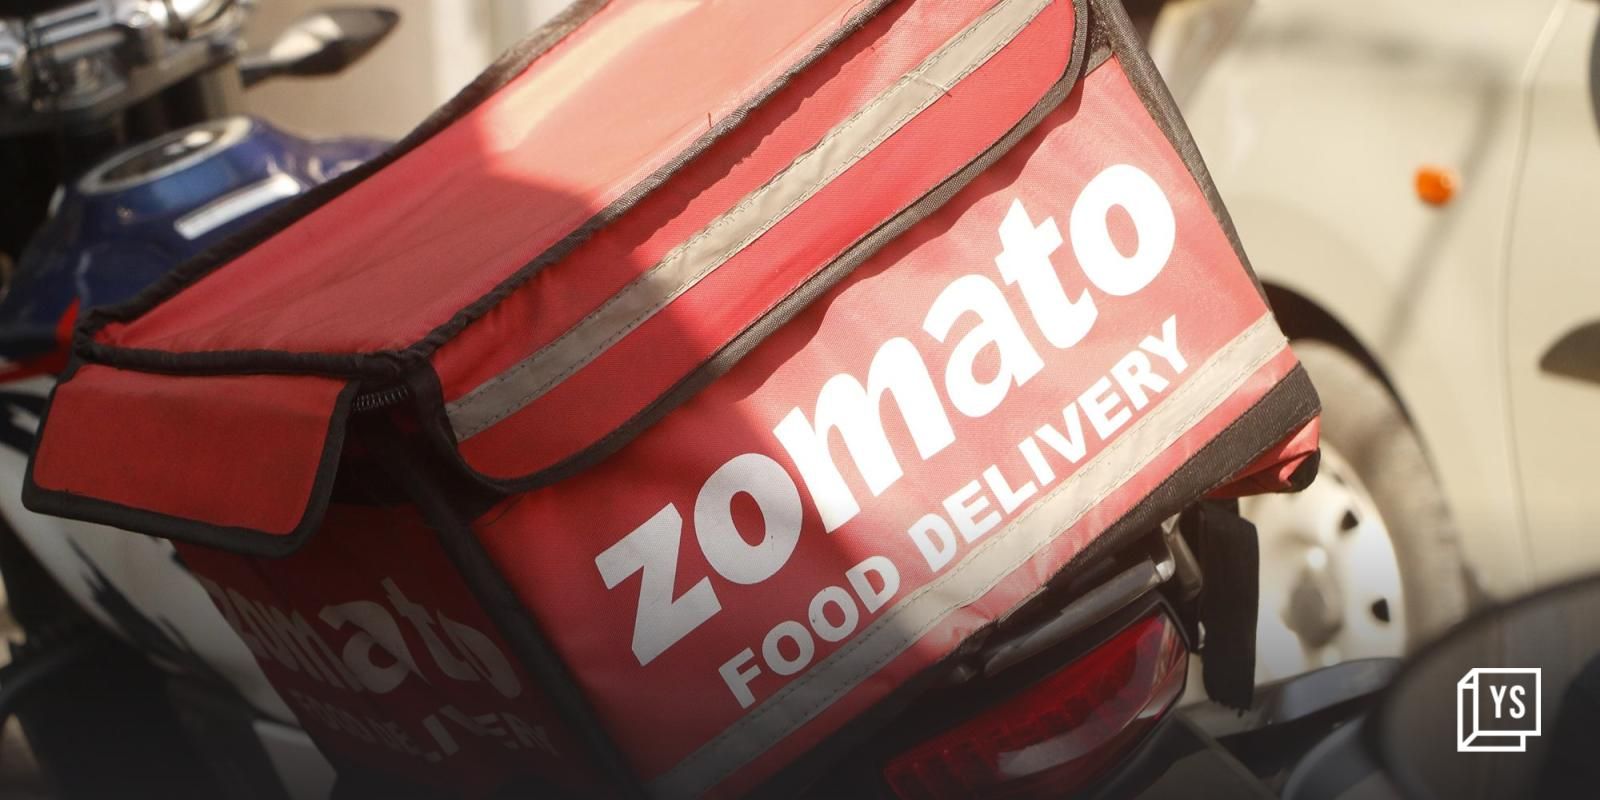 Zomato posts 70% rise in revenue YoY; expects EBITDA-level profitability in next 4 quarters